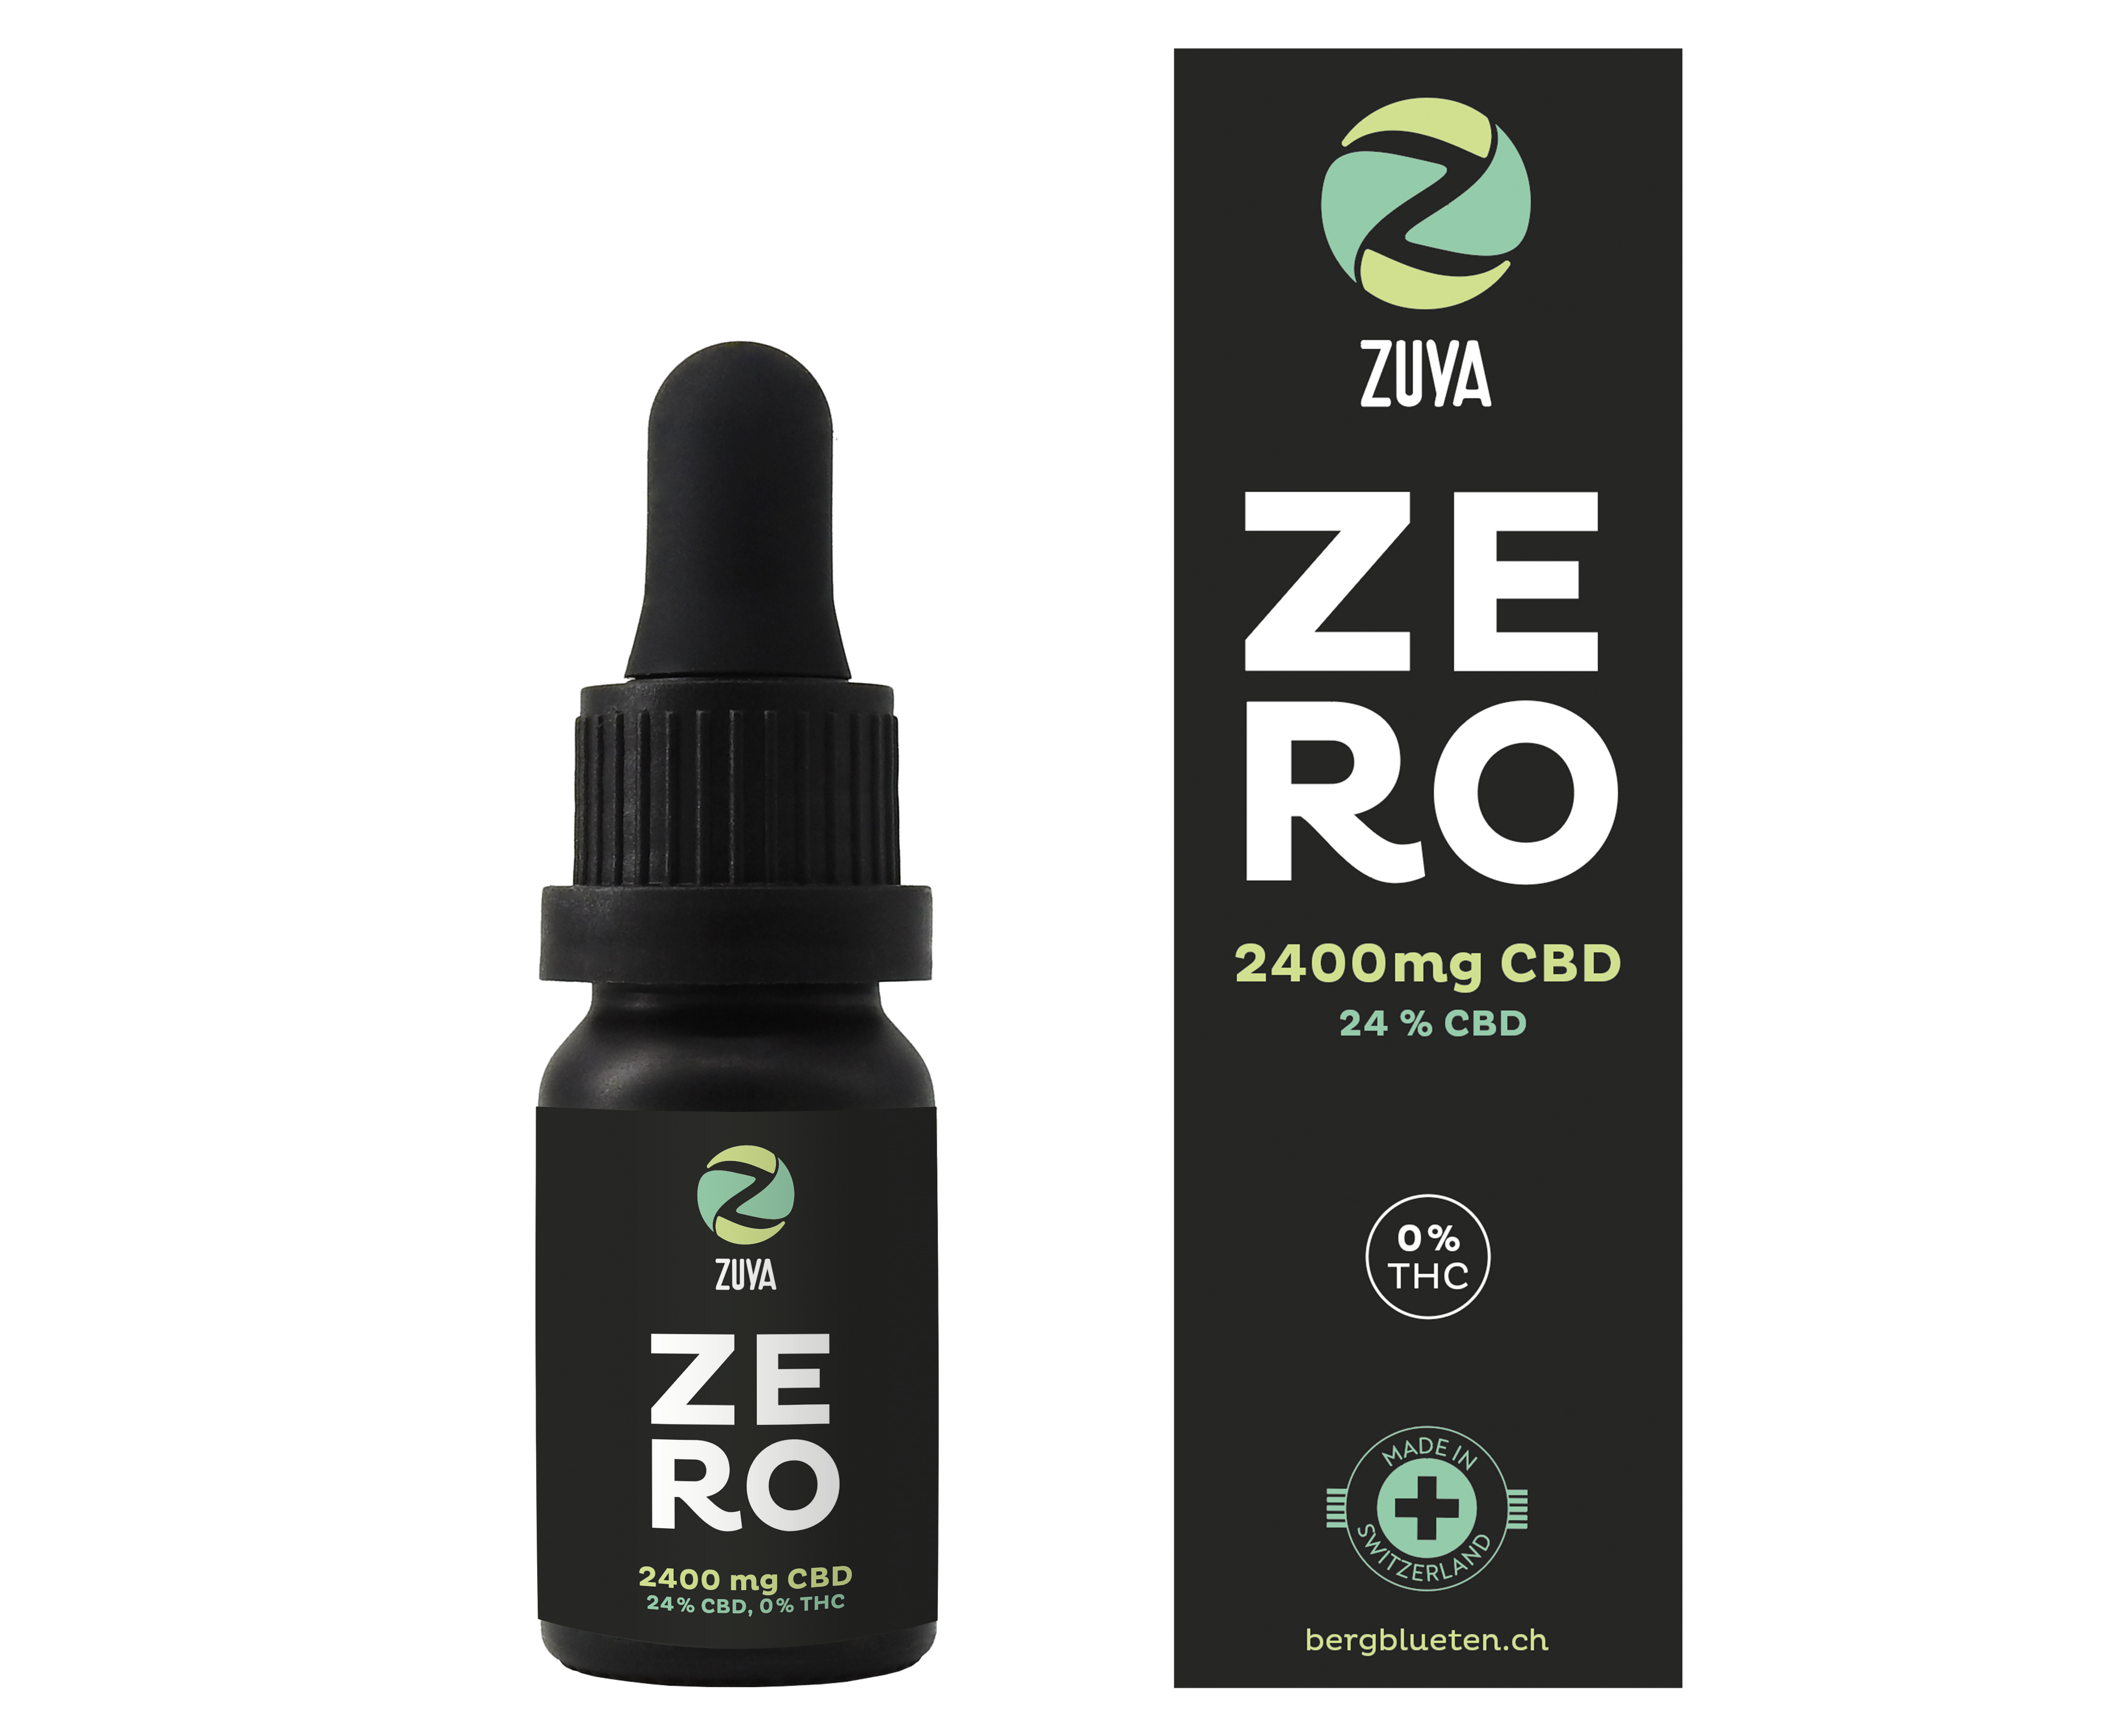 Zuya Zero 24% CBD – 0% THC fragrance oil